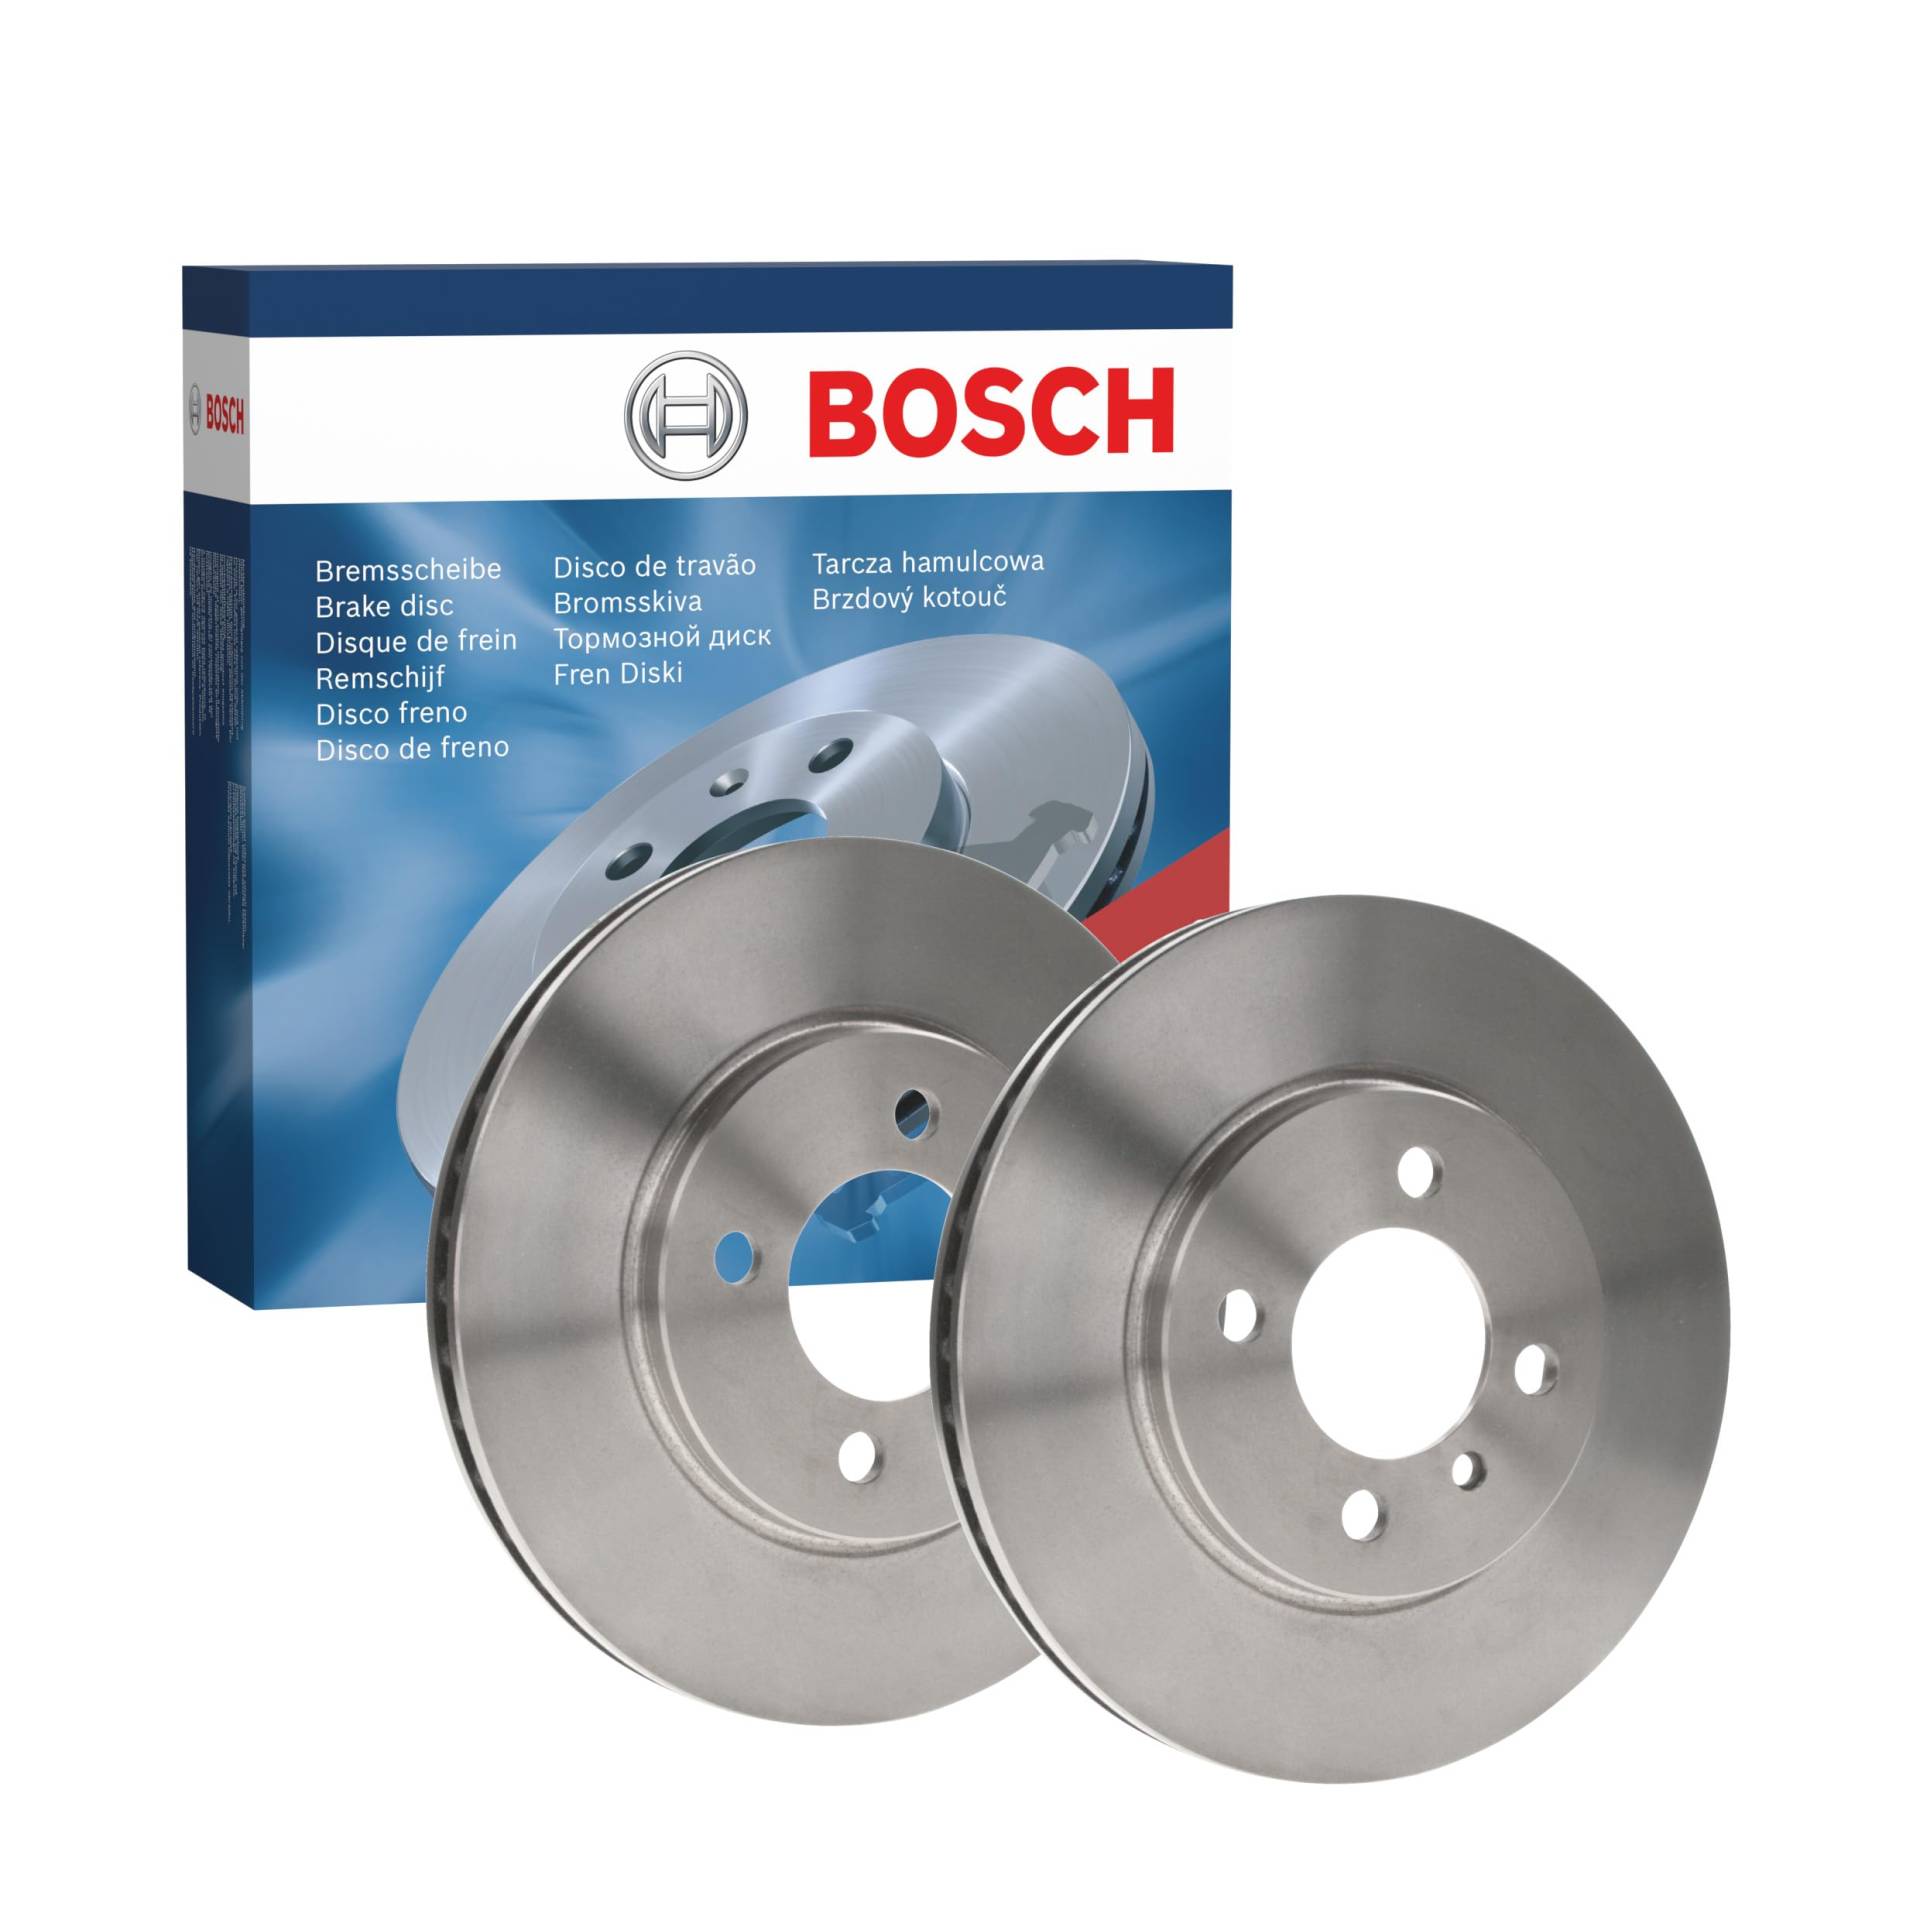 Bosch BD39 Bremsscheiben - Vorderachse - ECE-R90 Zertifizierung - zwei Bremsscheiben pro Set von Bosch Automotive